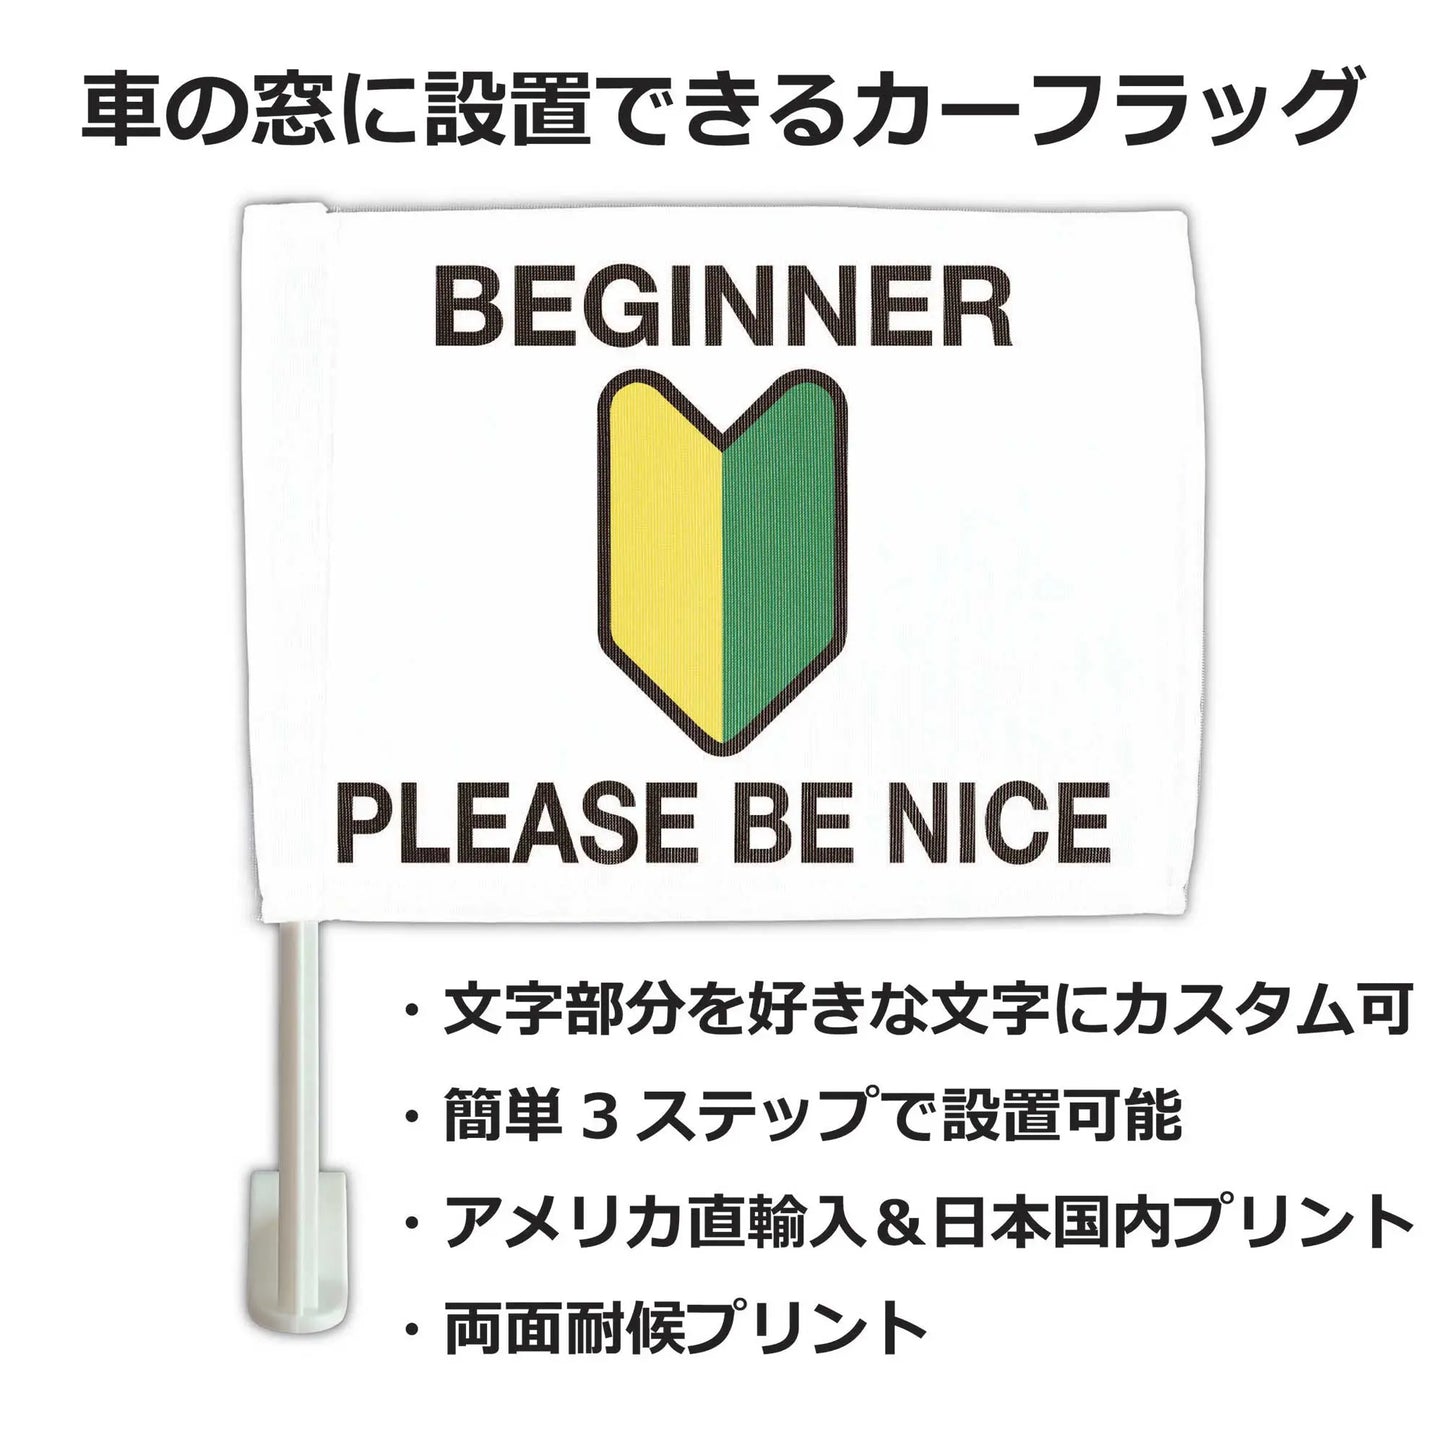 【カーフラッグ】BEGINNER/初心者マーク/自動車用オリジナルフラッグ・旗 PL8HERO